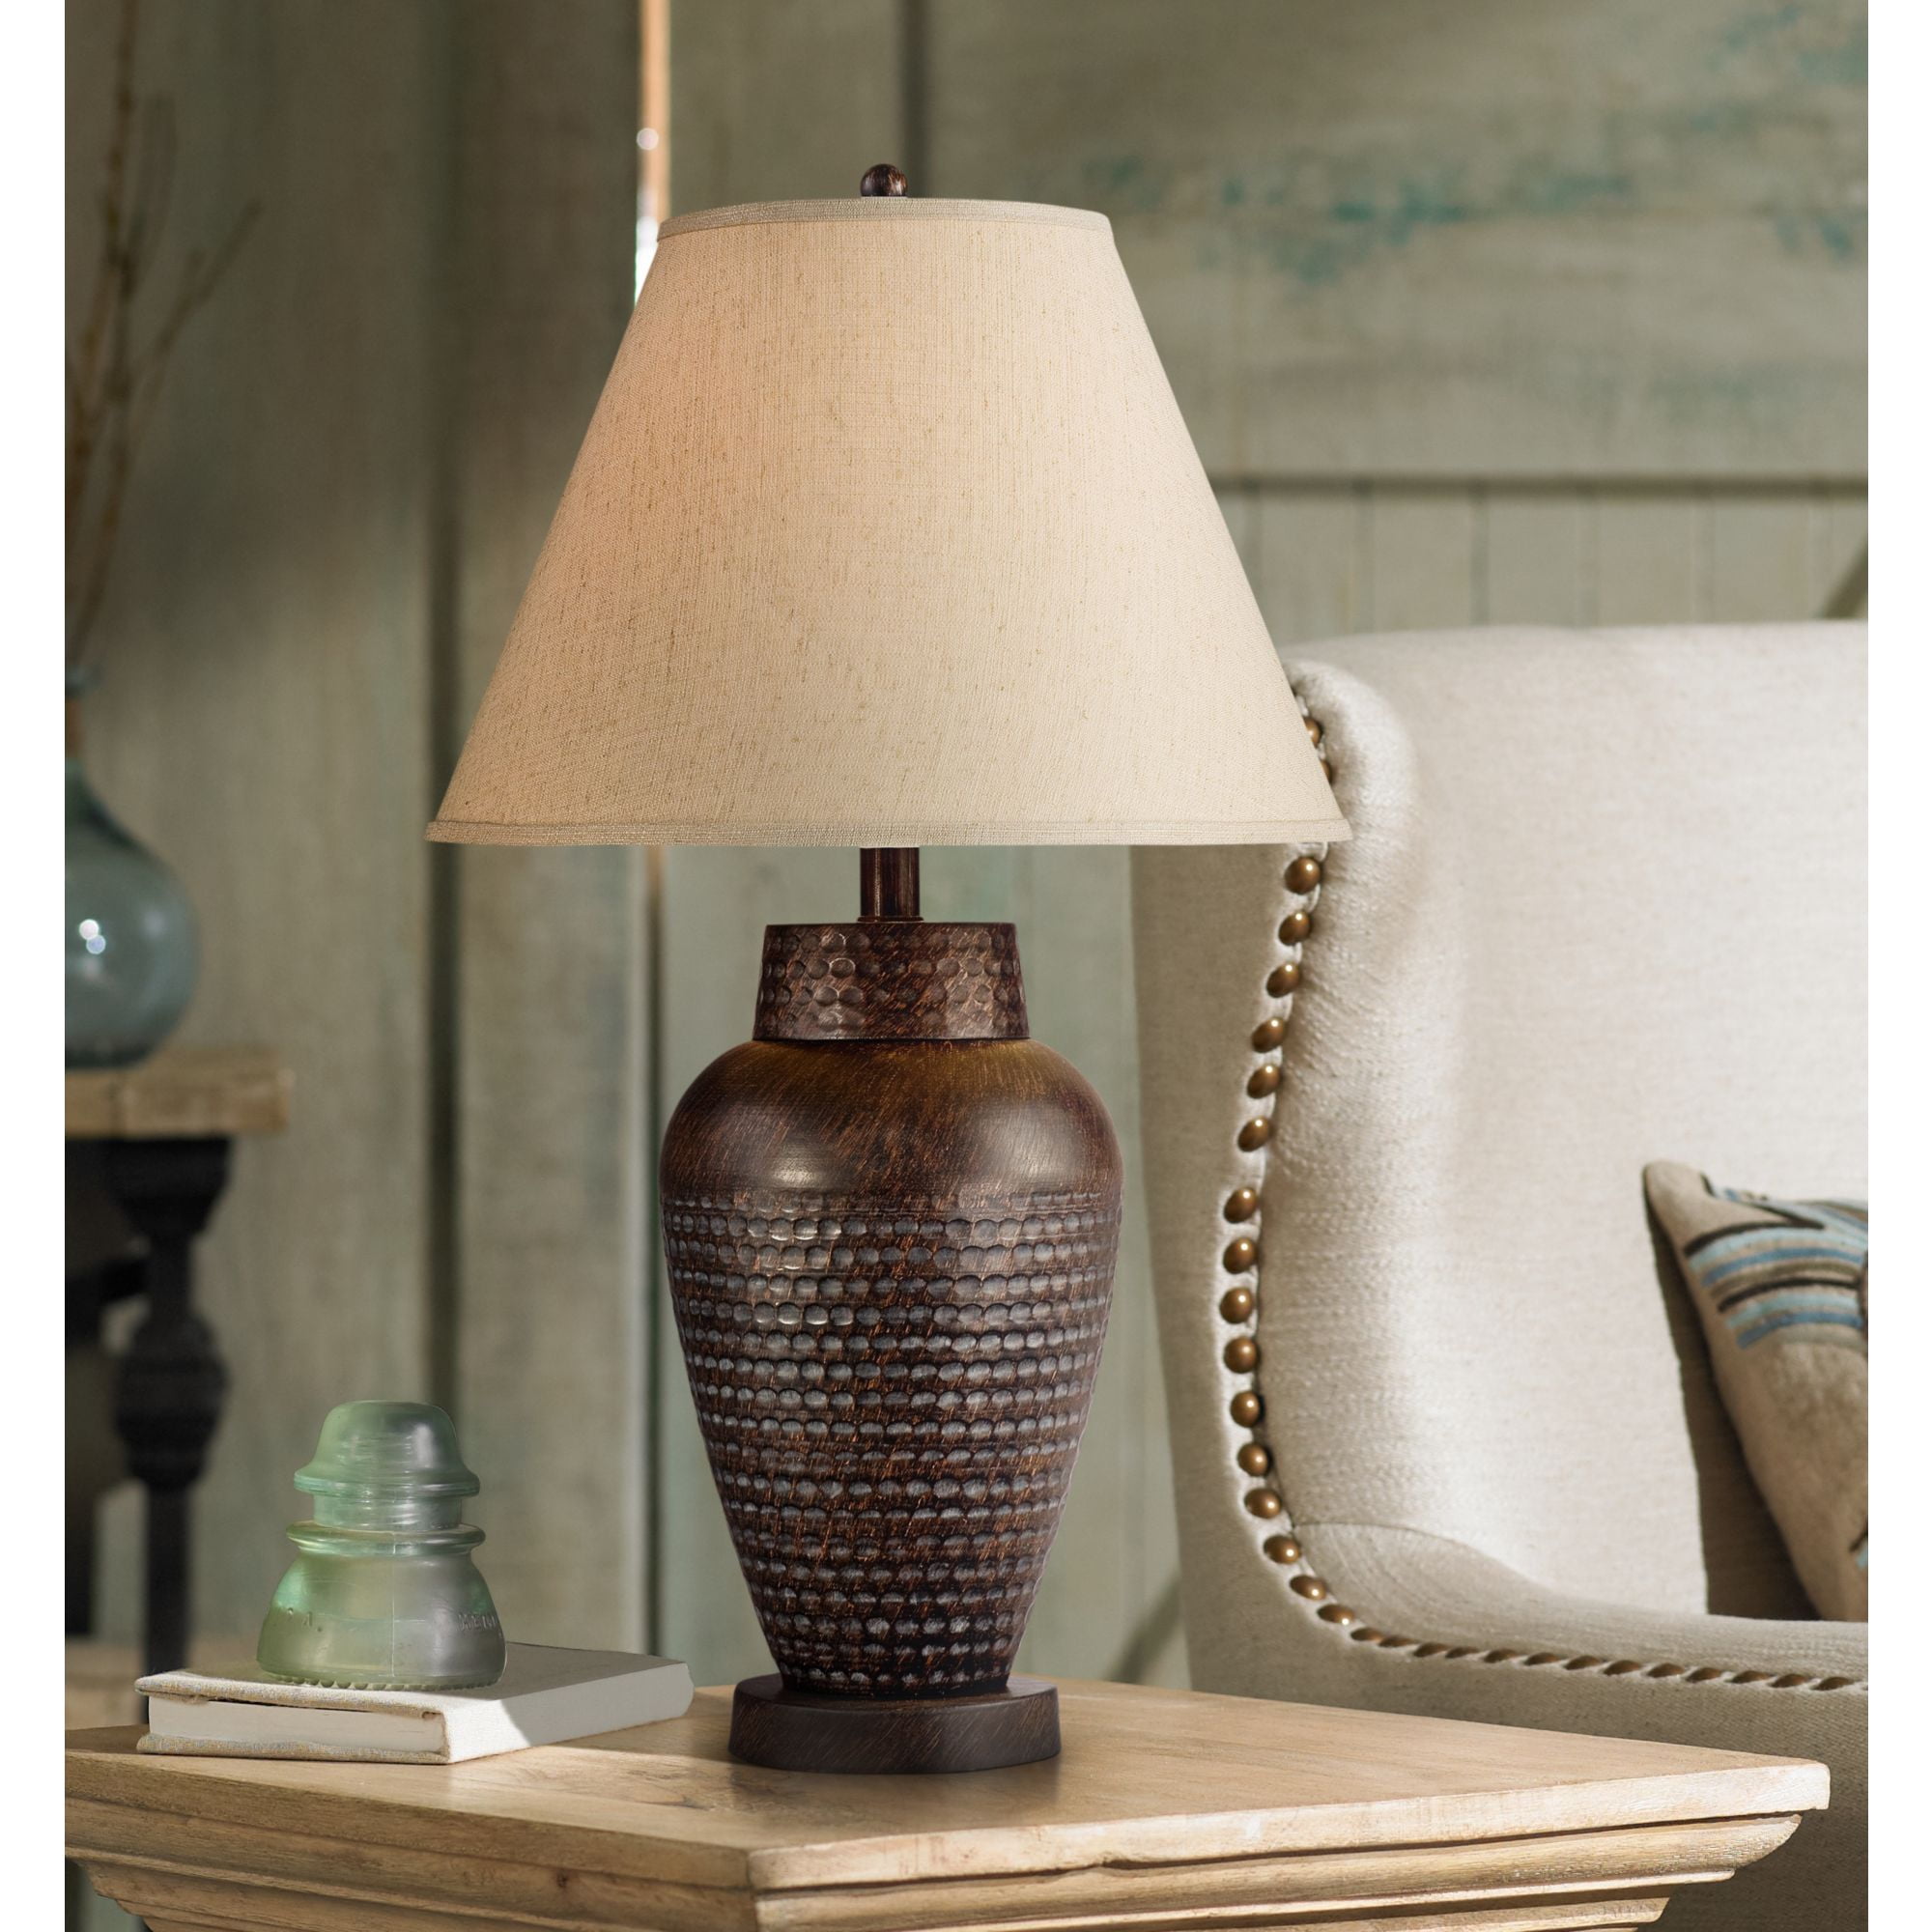 Regency Hill Modern Table Lamp 25 High, Vase Table Lamps For Living Room